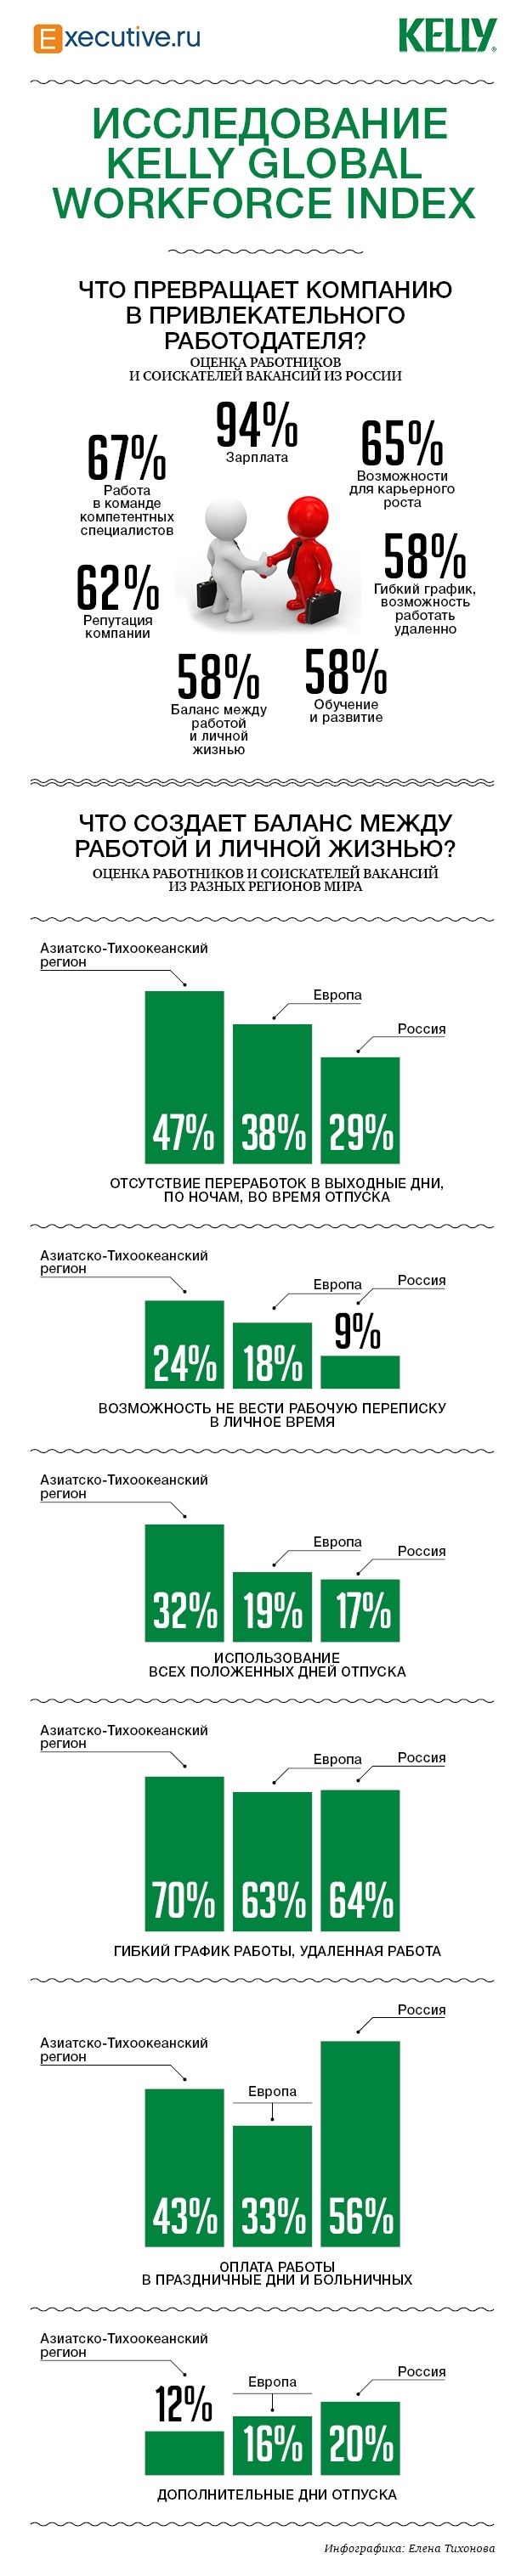 Work & Life Balance в России и других странах